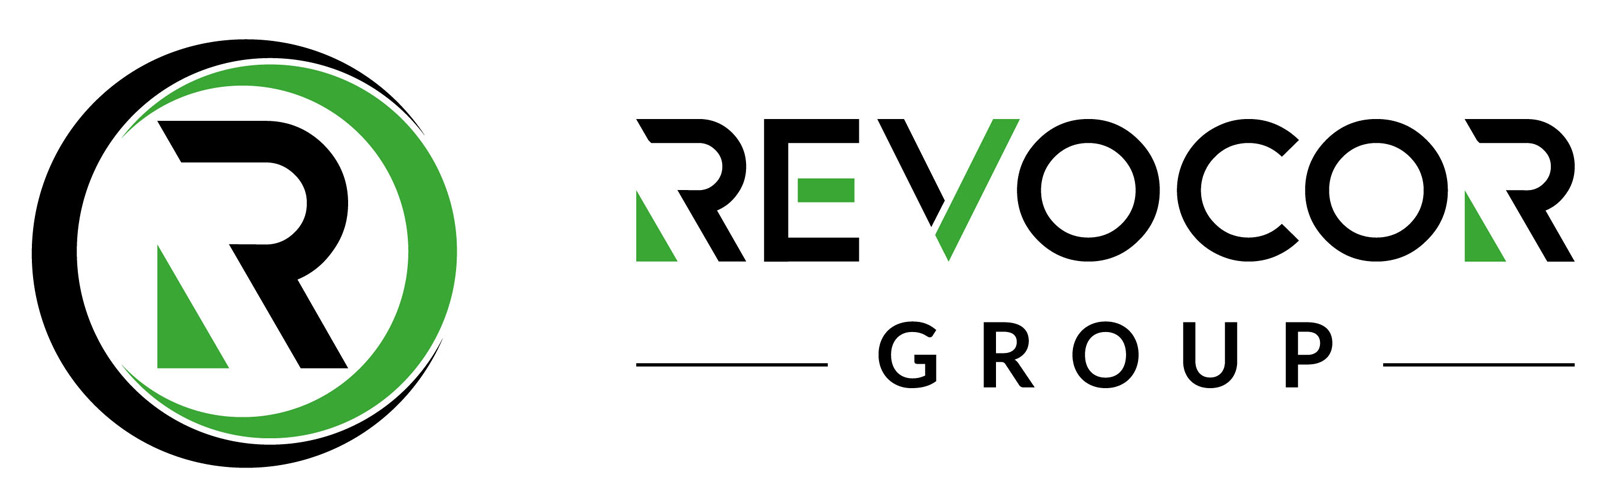 The Revocor Group